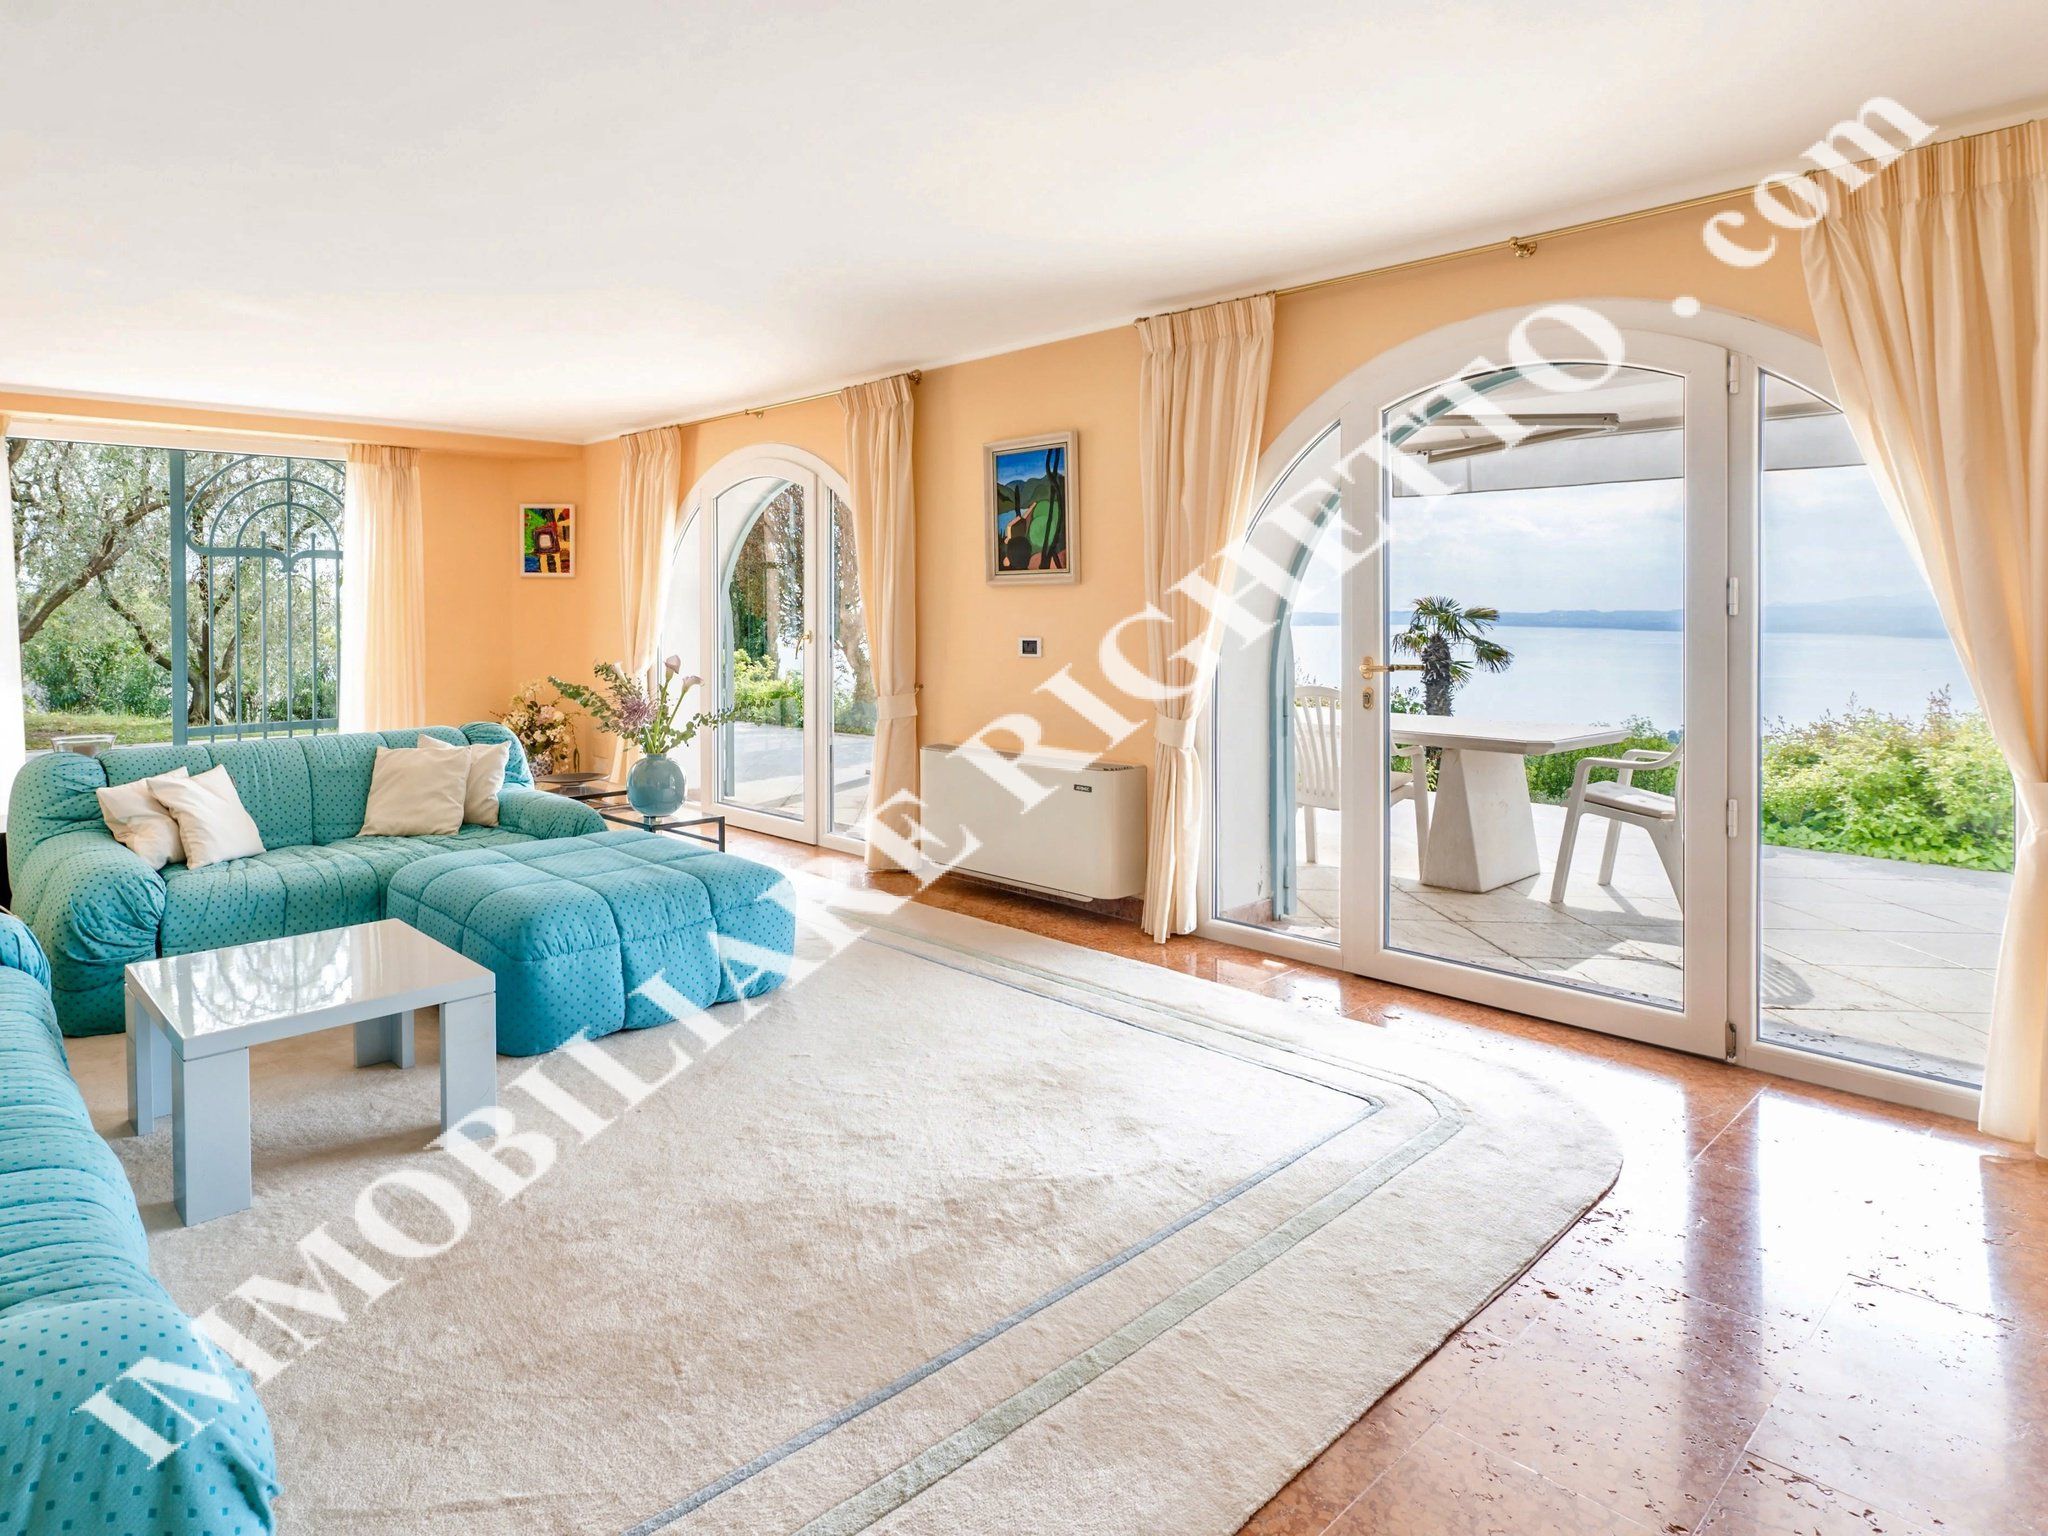 offerta immobile in vendita Splendida e riservata villa singola con meravigliosa VISTA LAGO PANORAMICA A 180°